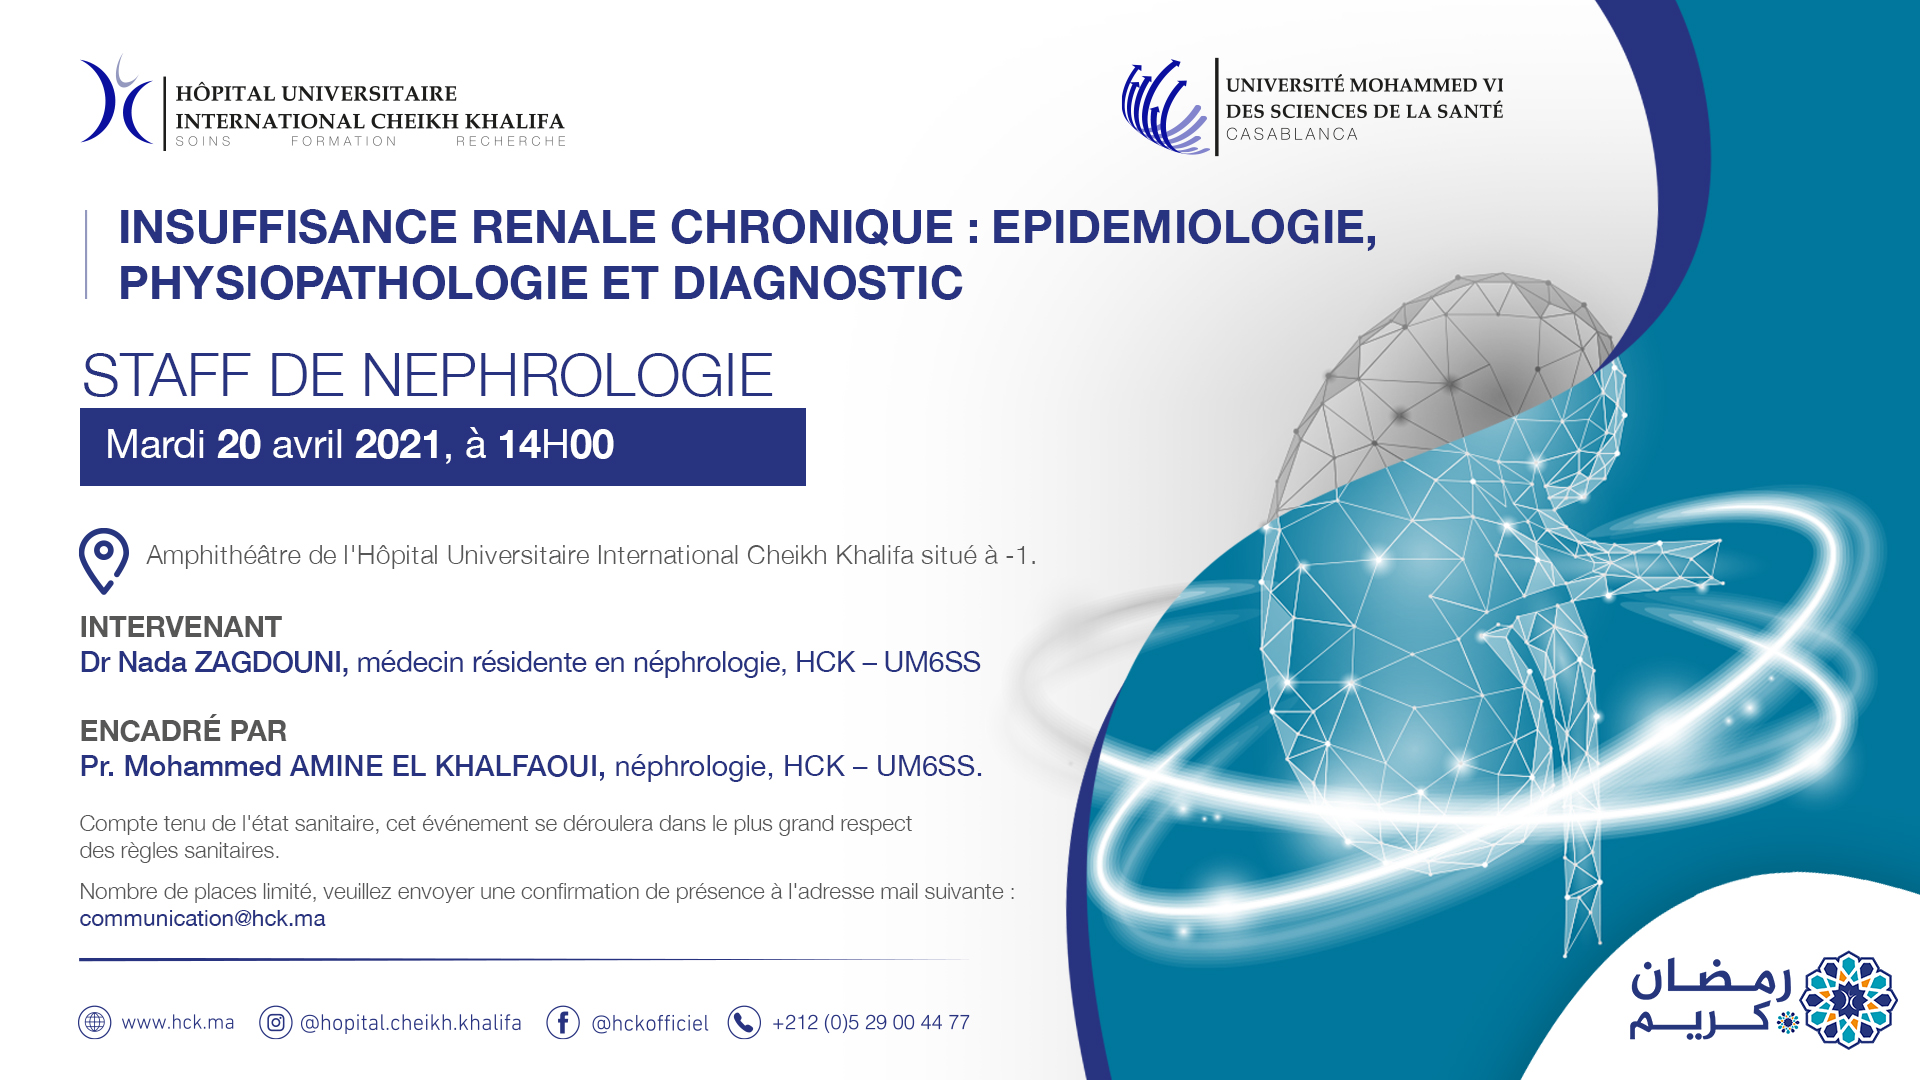 STAFF DE NEPHROLOGIE - INSUFFISANCE RENALE CHRONIQUE : EPIDEMIOLOGIE, PHYSIOPATHOLOGIE ET DIAGNOSTIC